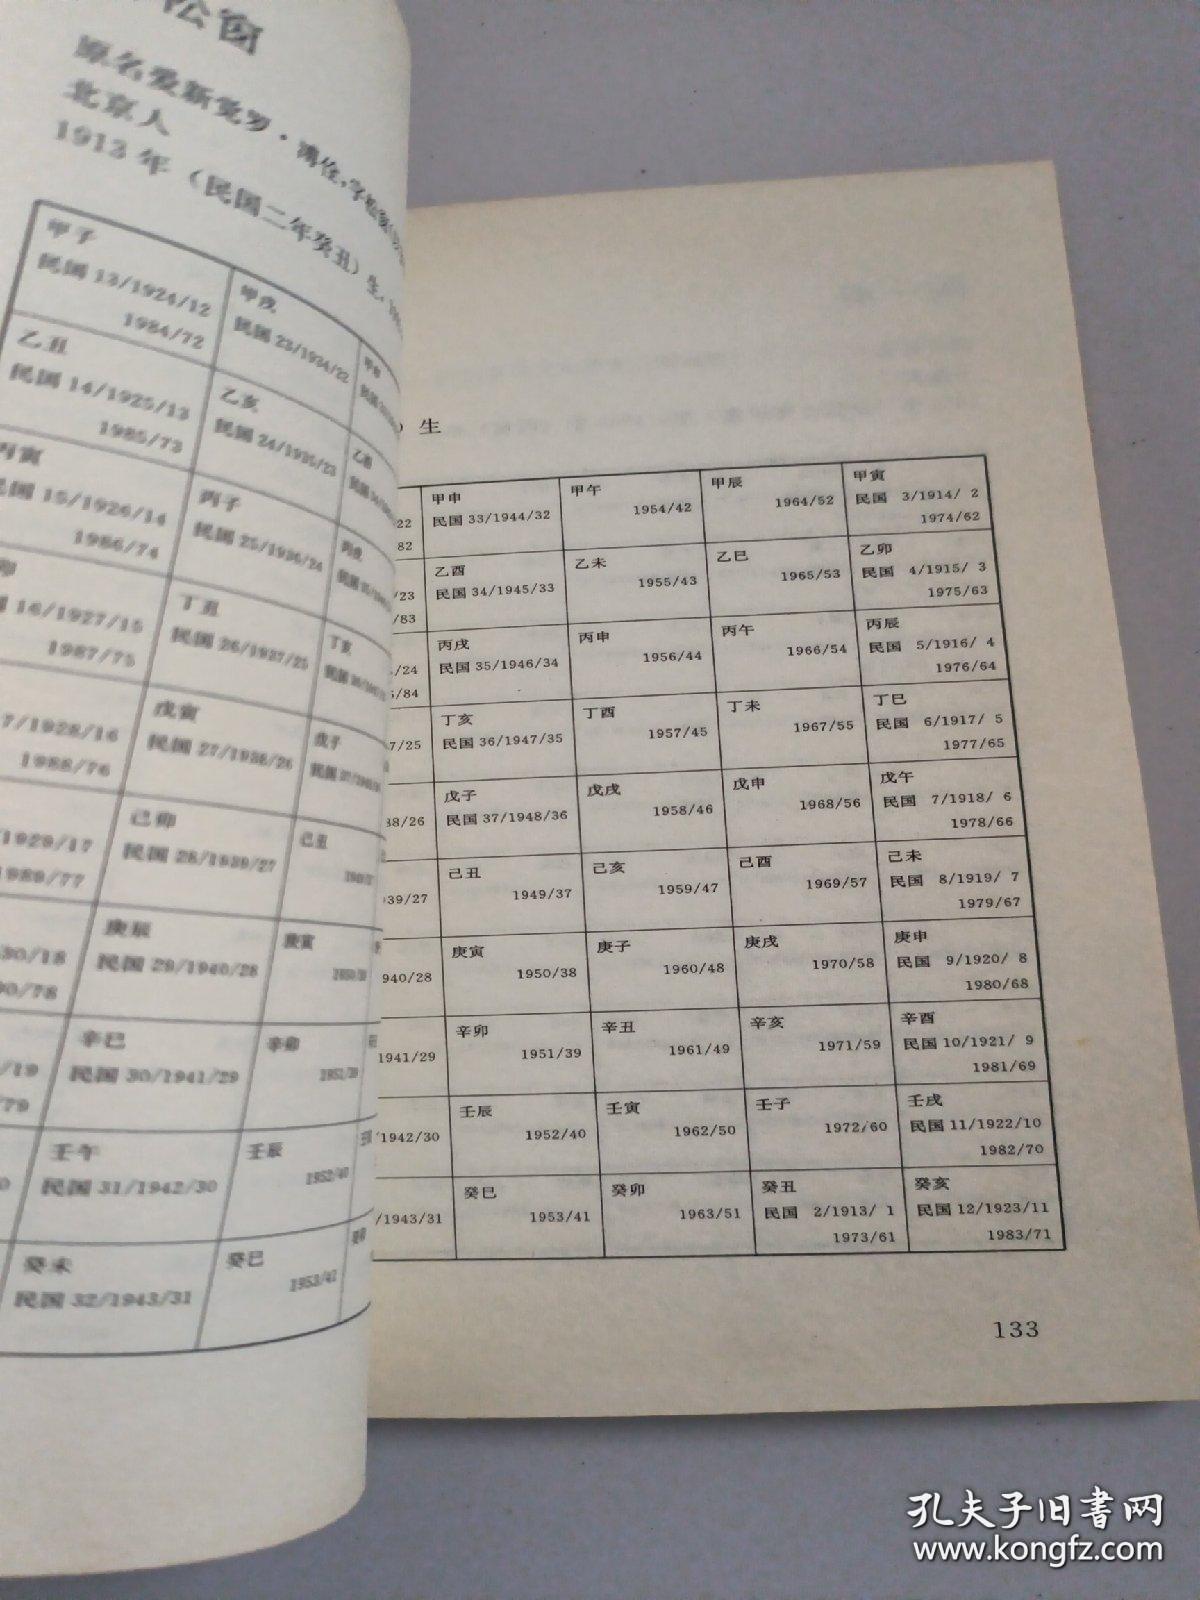 二十世纪书画名家年龄 干支 年号 公元速查表